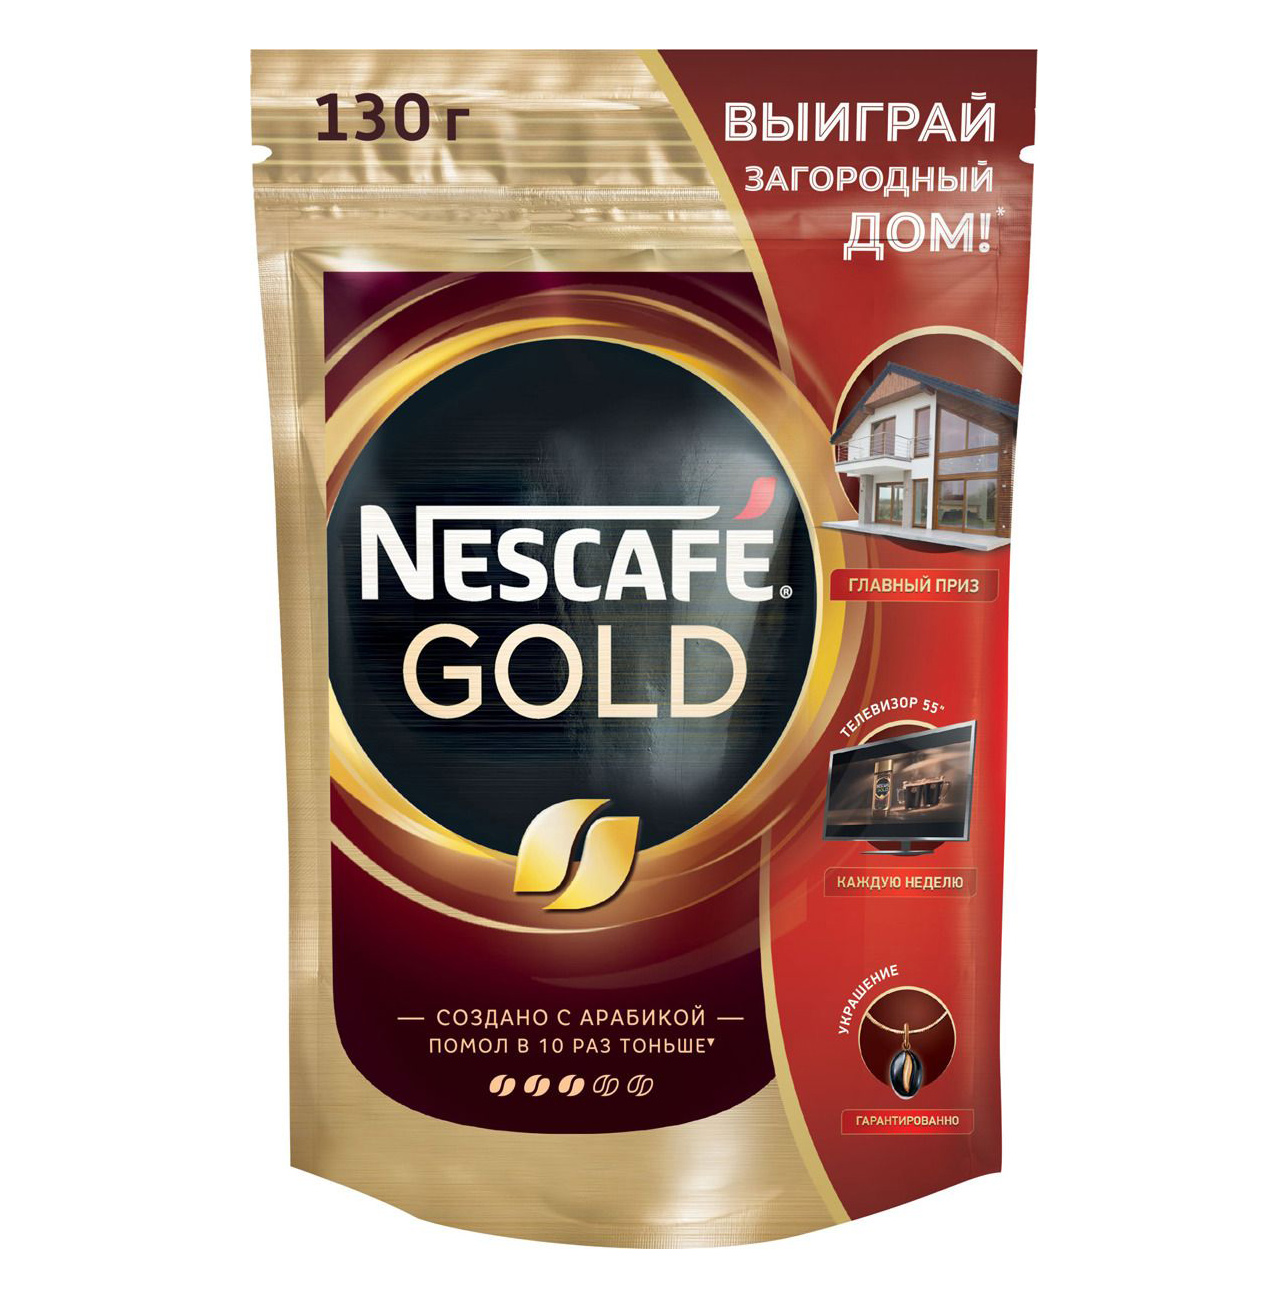 Кофе растворимый Nescafe Gold 130 г nescafe gold растворимый 30 порций по 2 г